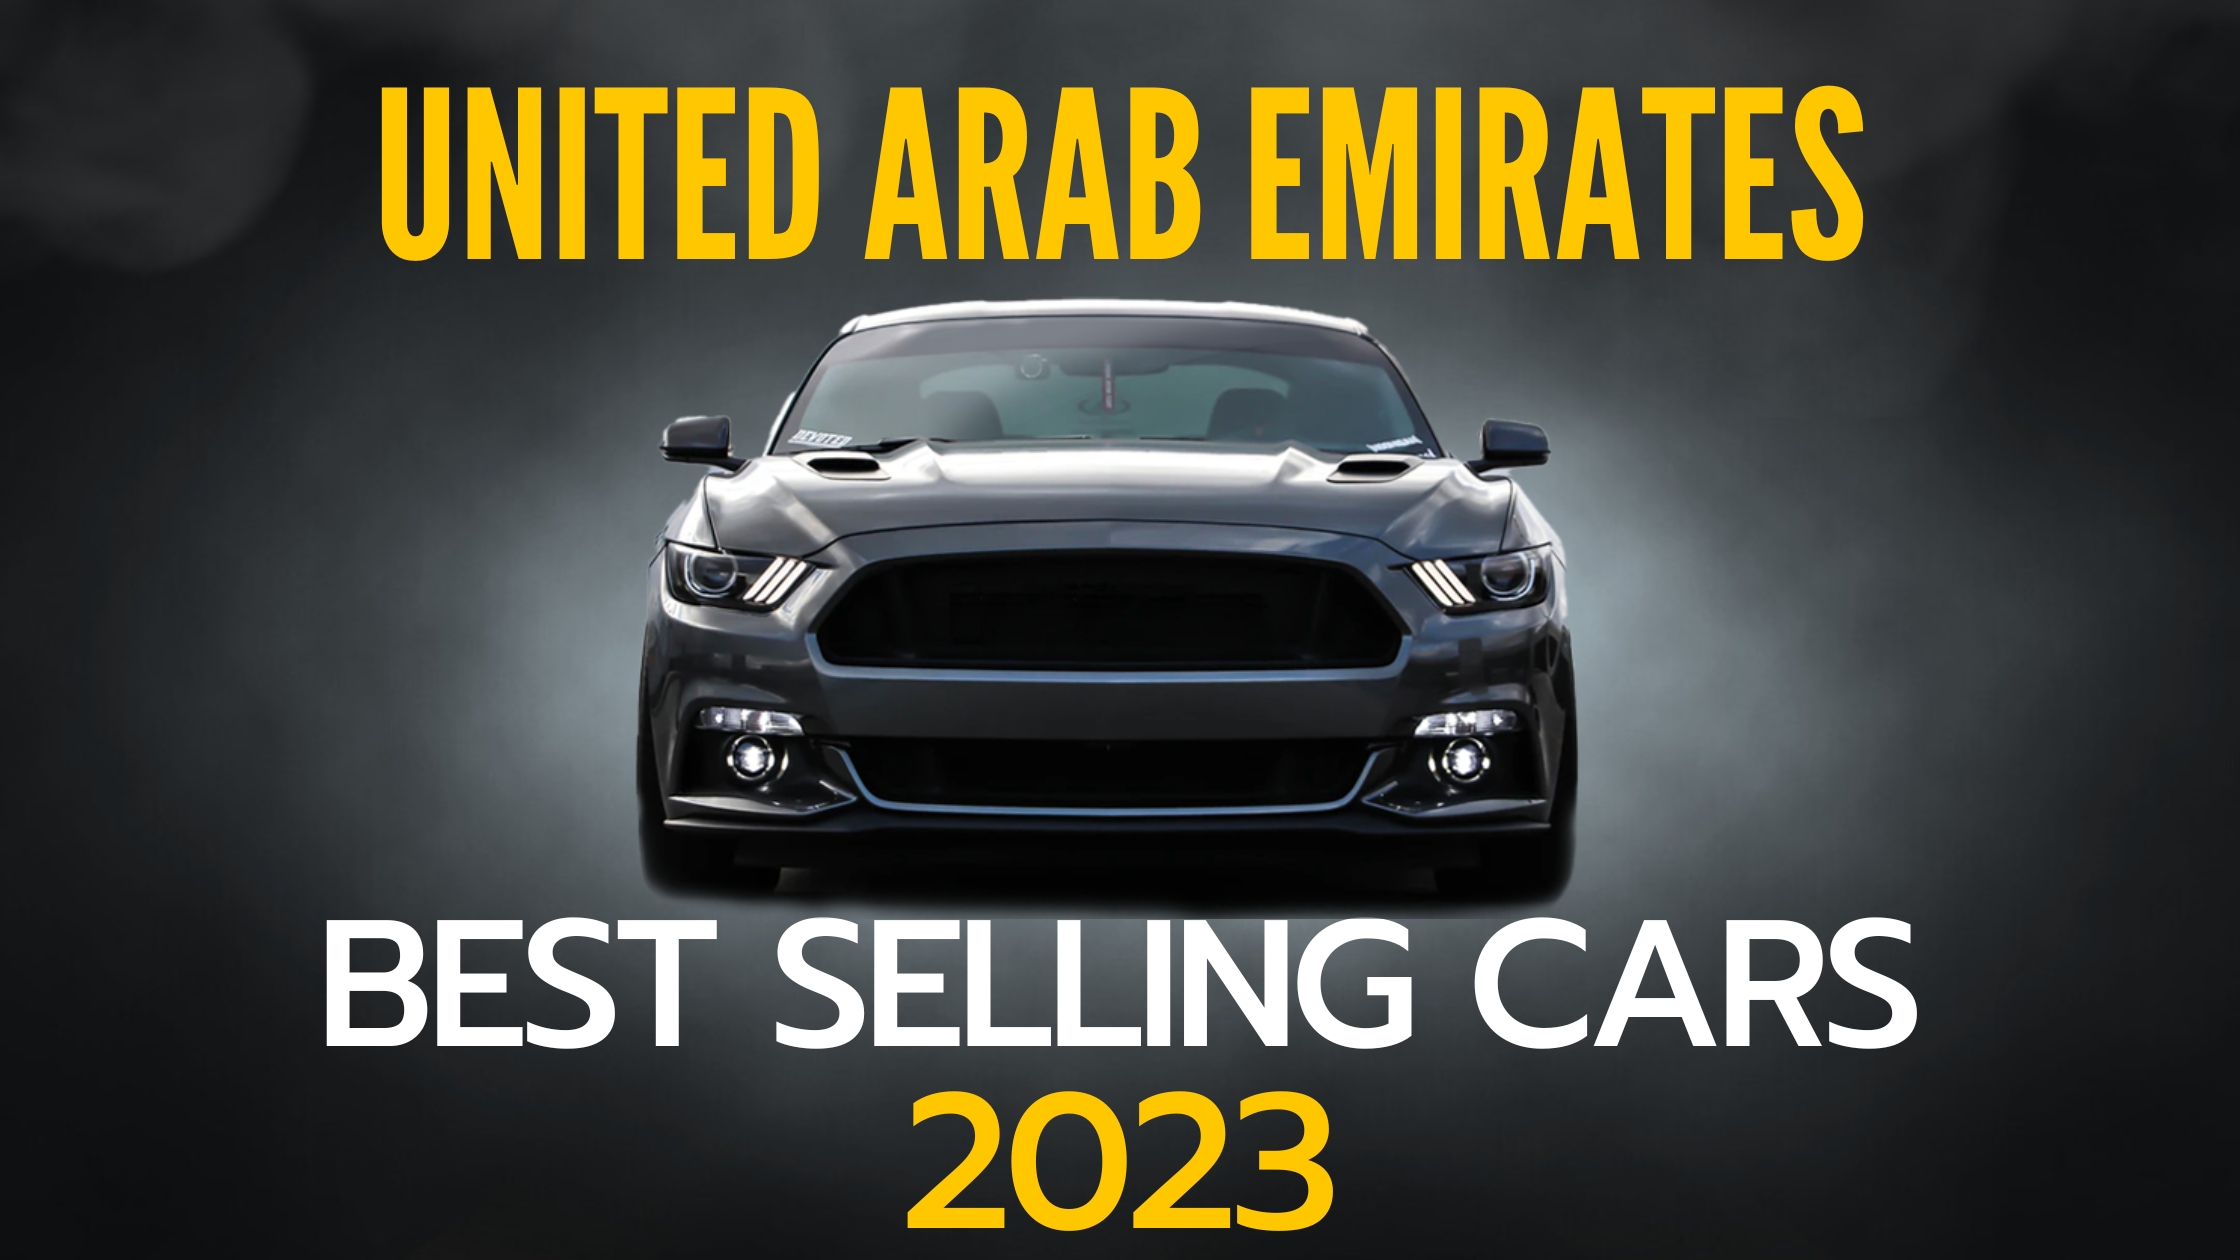 UAE Best Selling Cars IN 2023